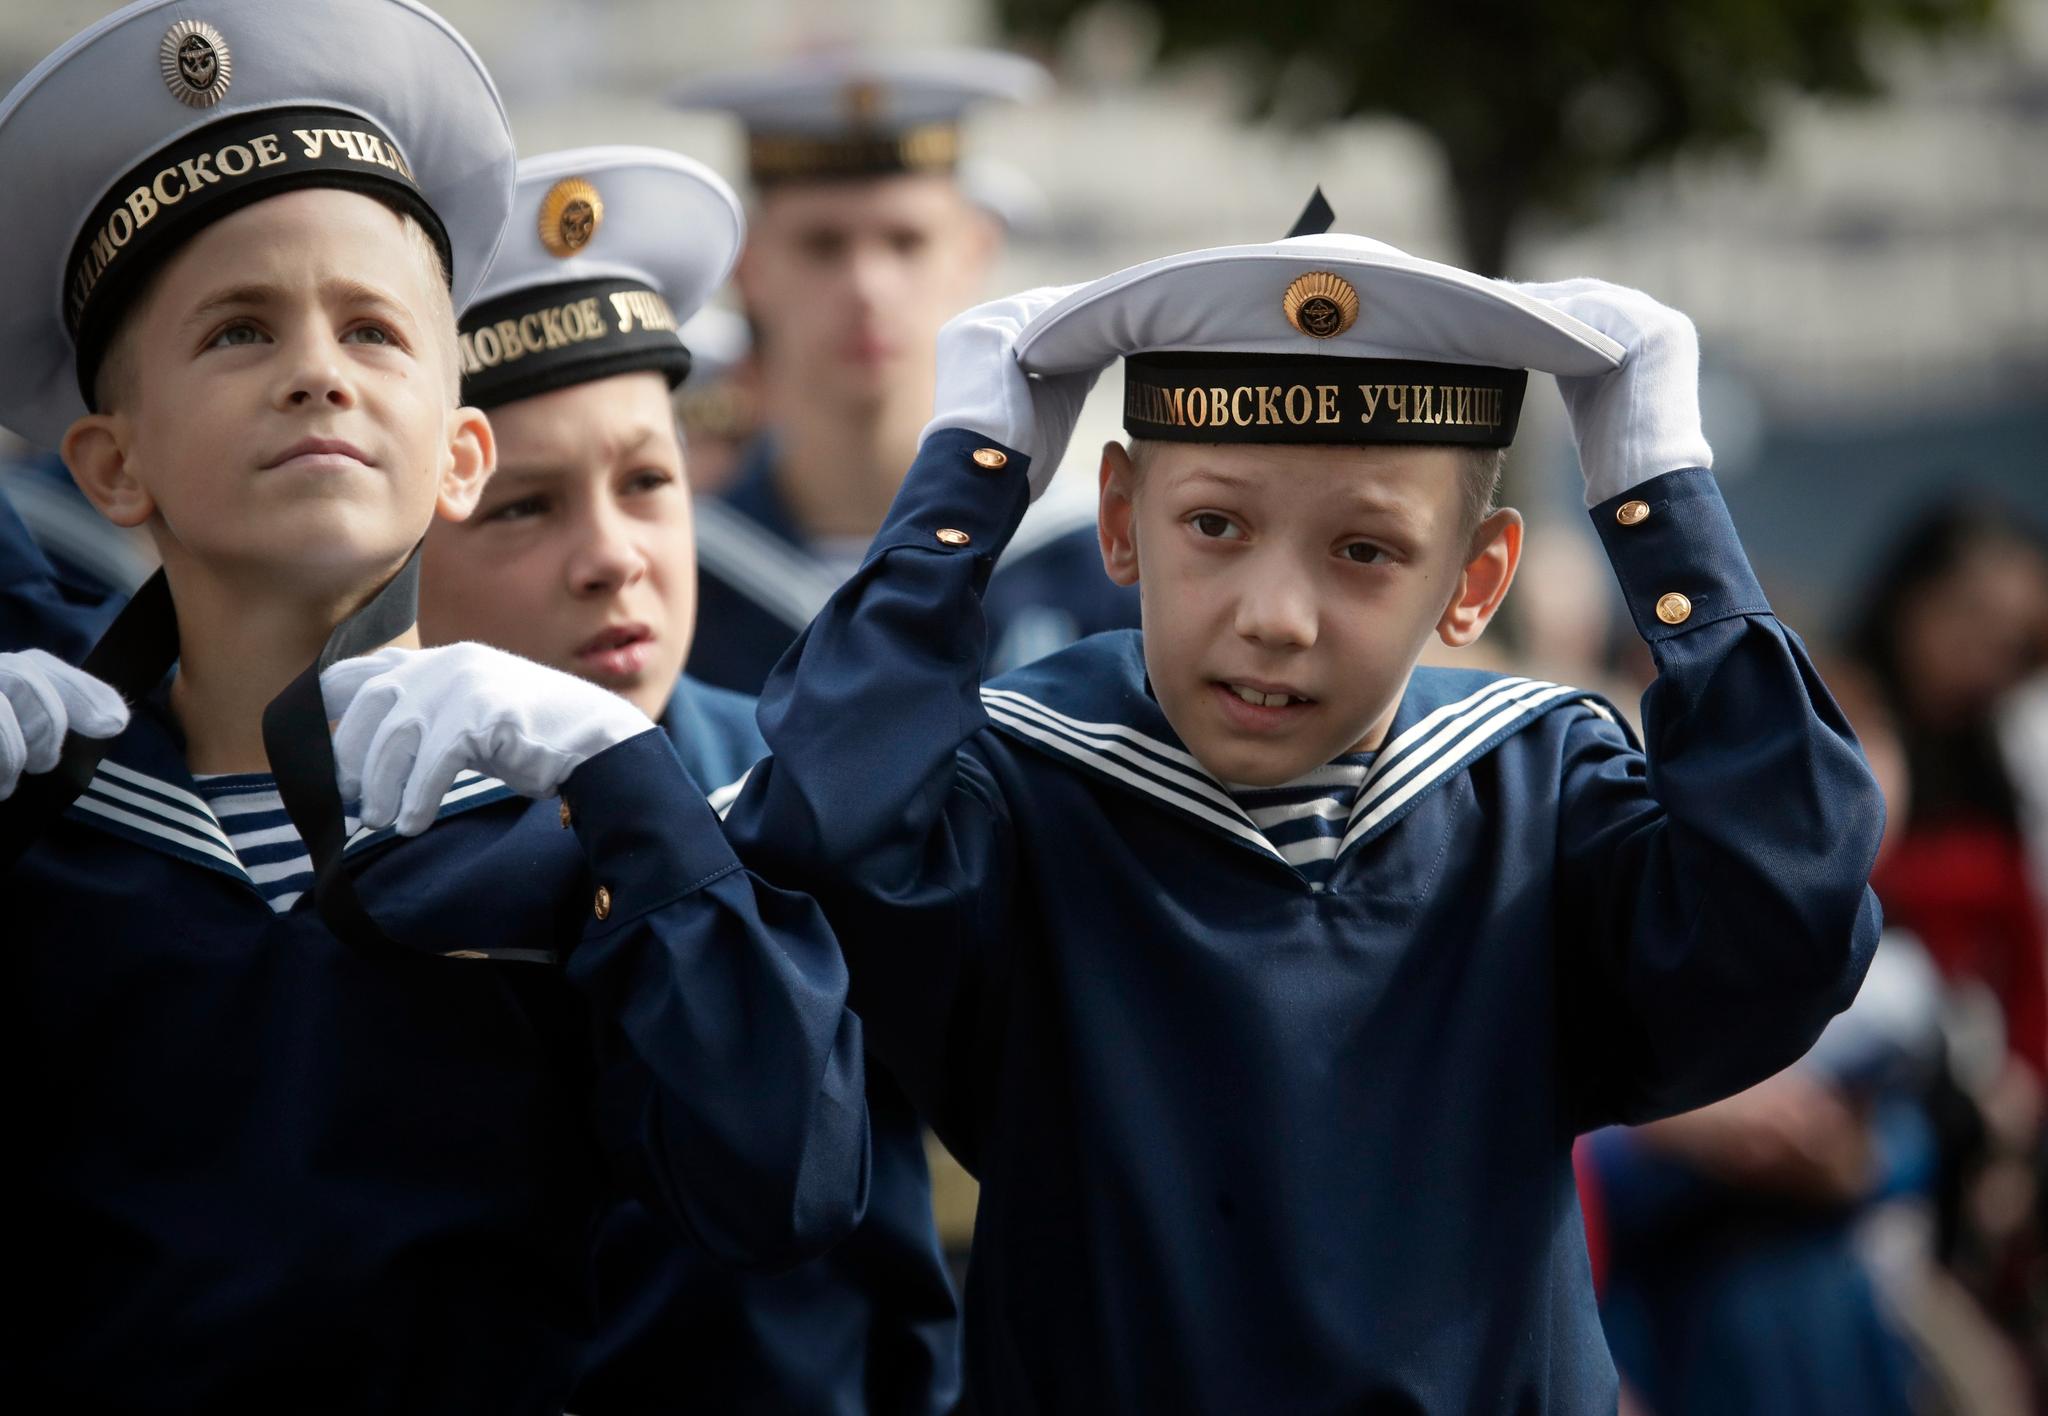 Førsteårskadetter ved Nakhimov marineakademi i St. Petersburg på Kunnskapens dag 1. september 2018. 